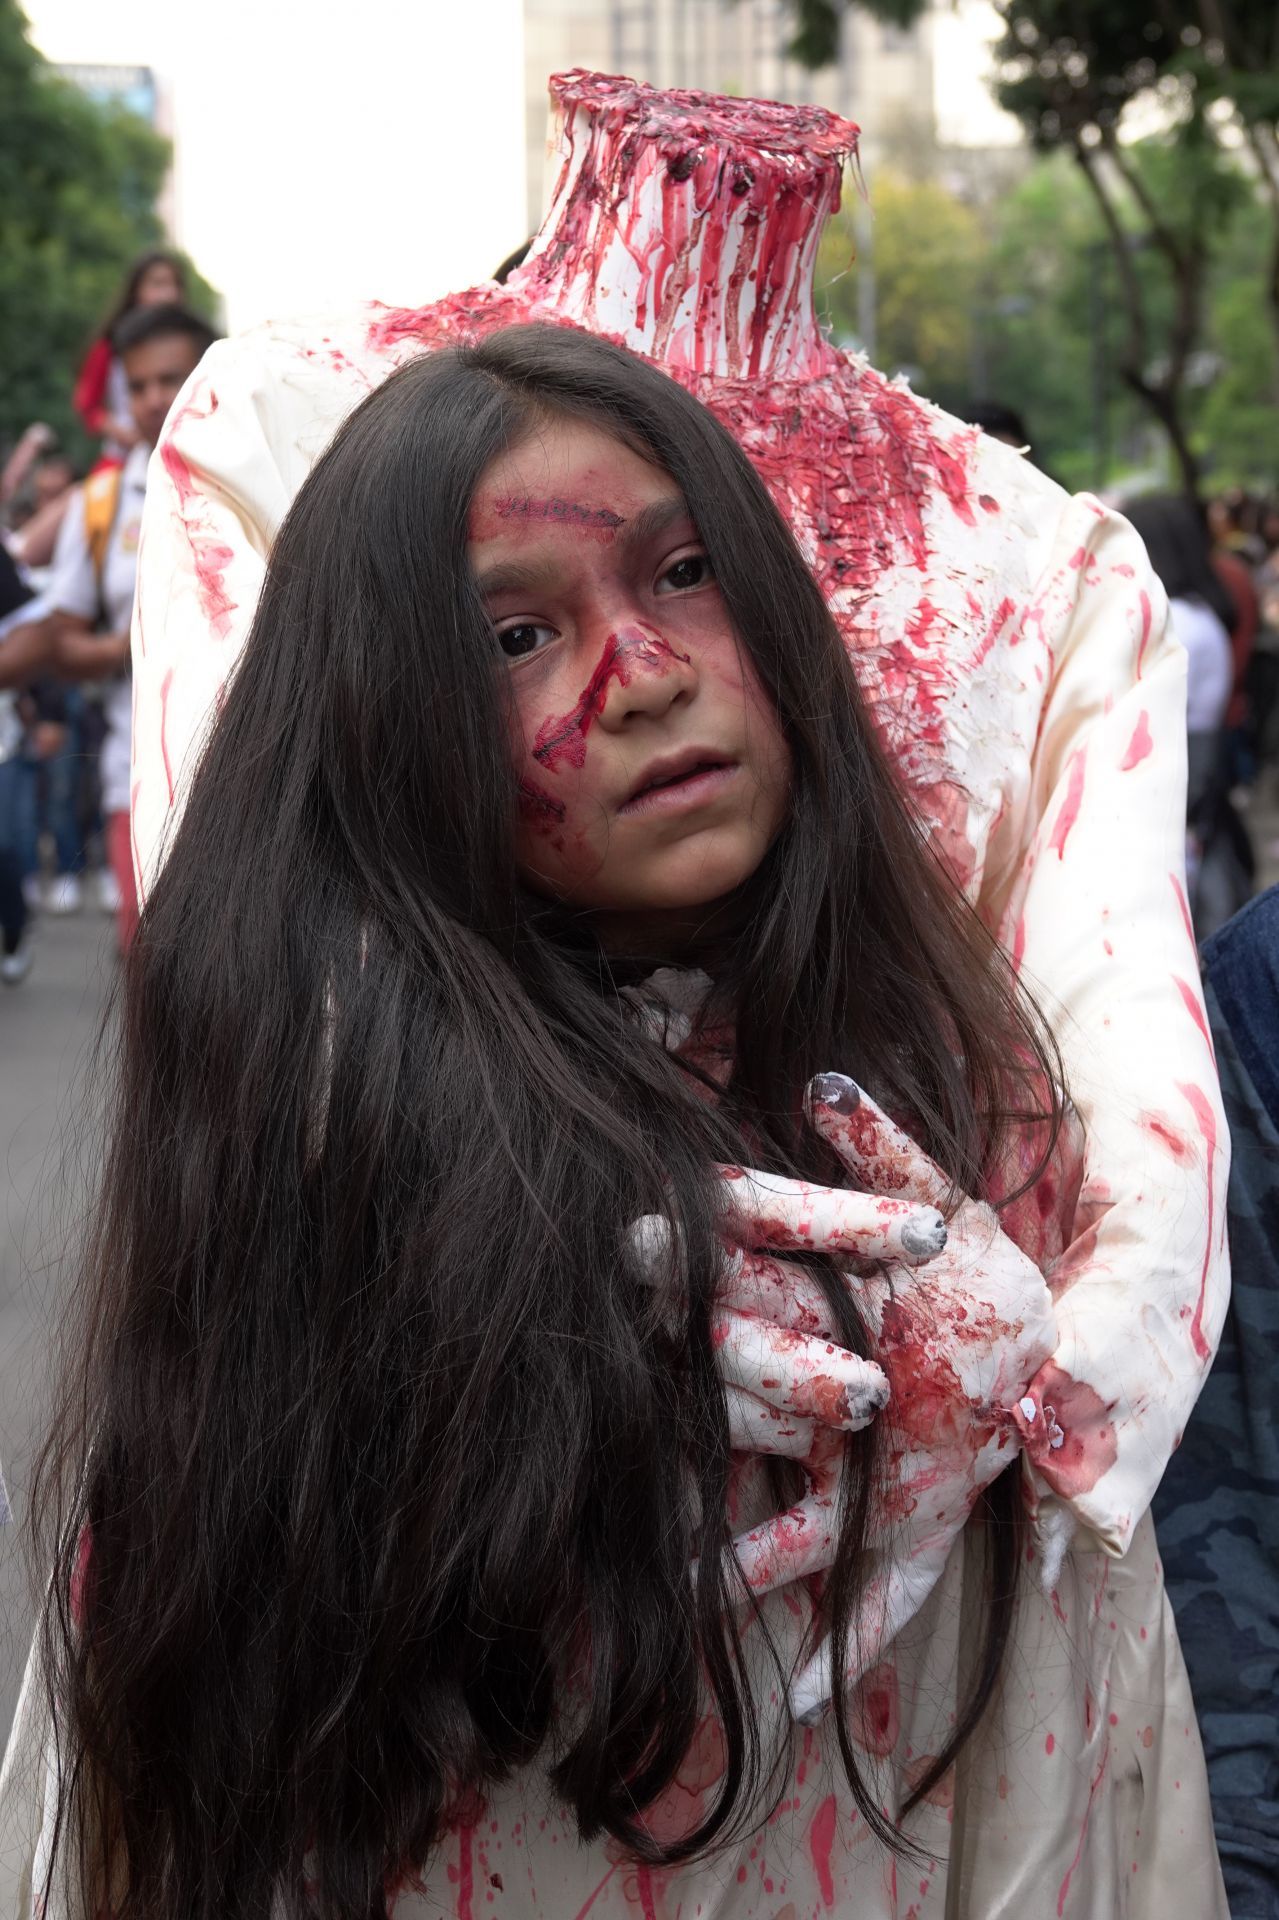 Después de dos años, Zombies vuelven a tomar las calles de la CDMX